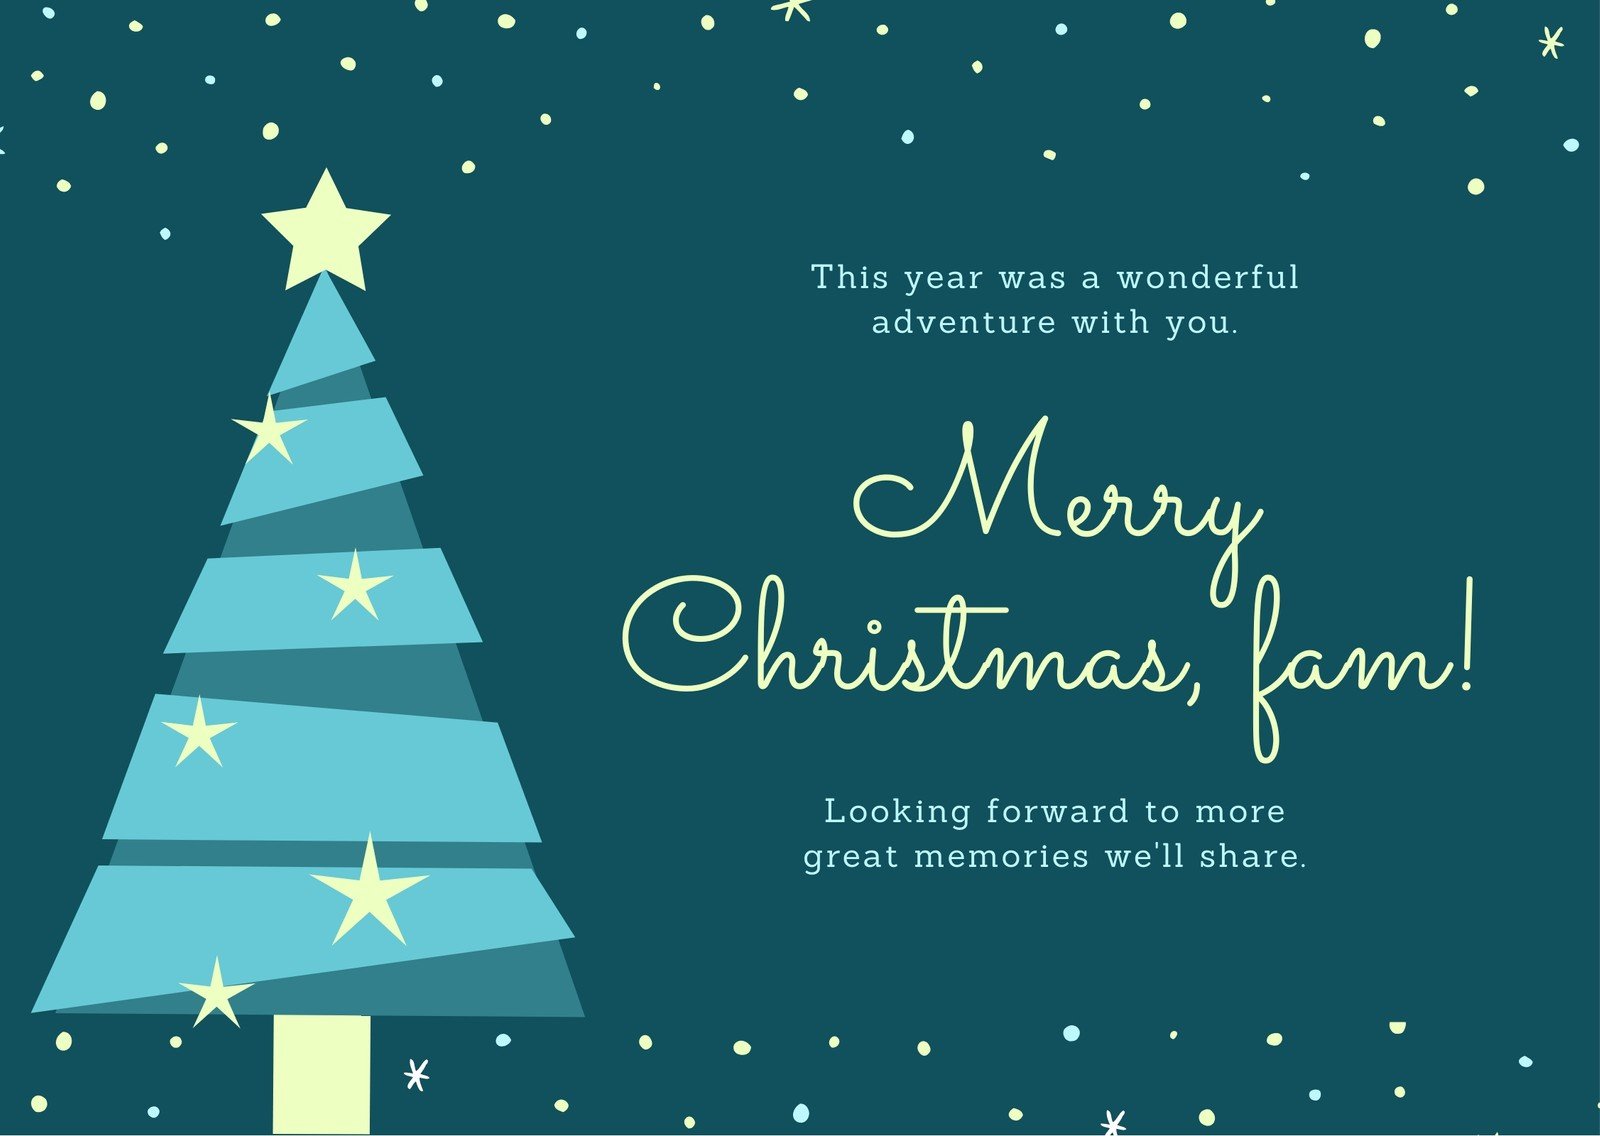 Free custom printable Christmas card templates  Canva With Christmas Note Card Templates